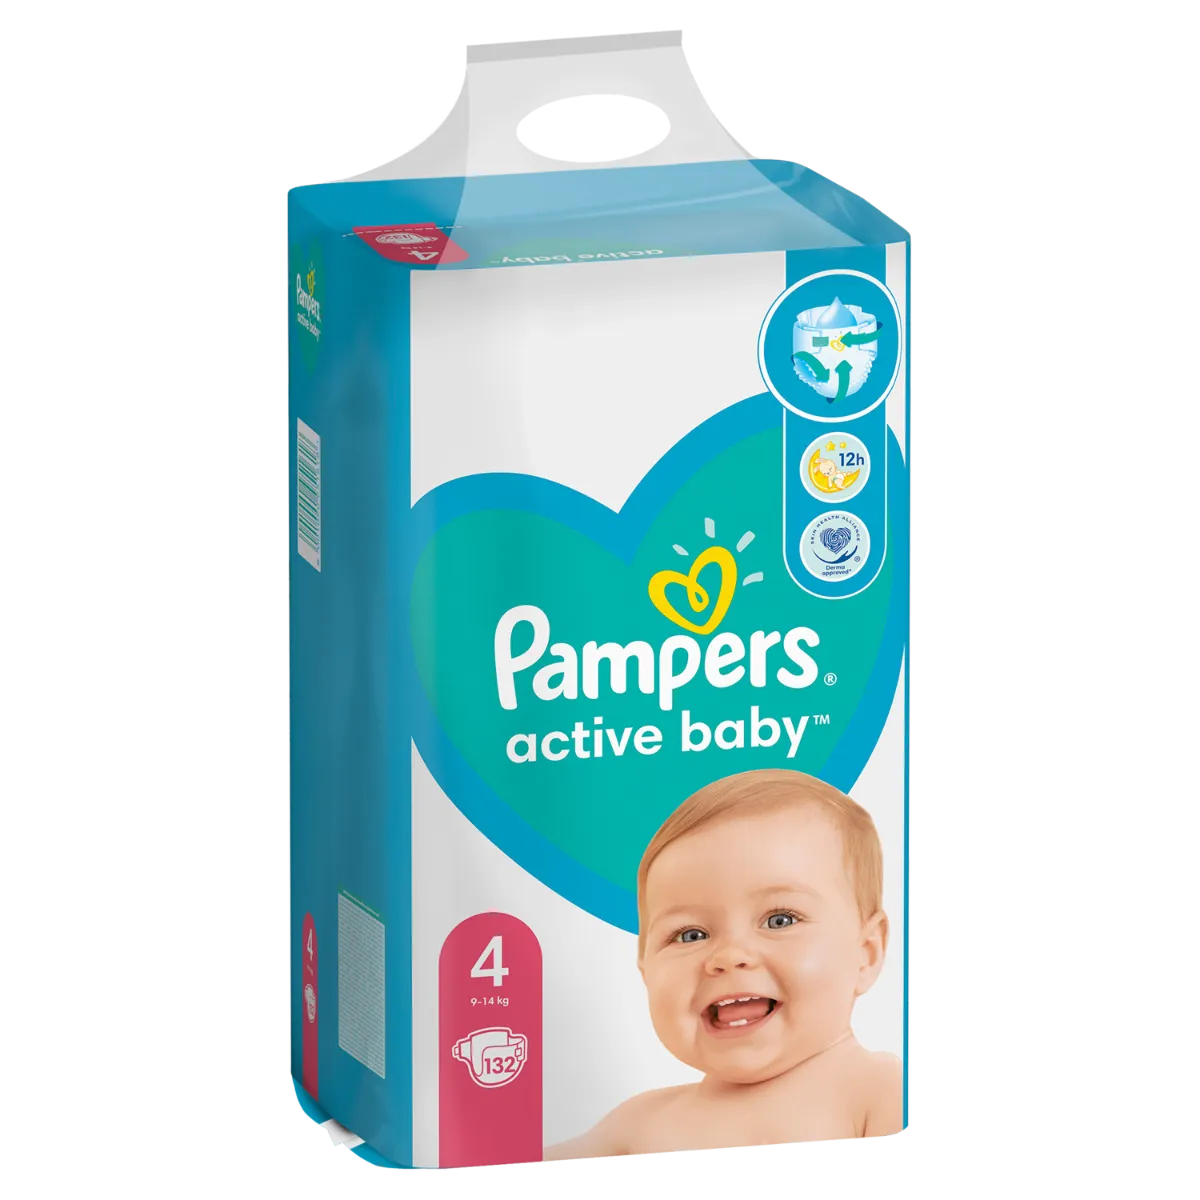 Pampers Active Baby vel. 4 9–14 ks dětské pleny 132 ks